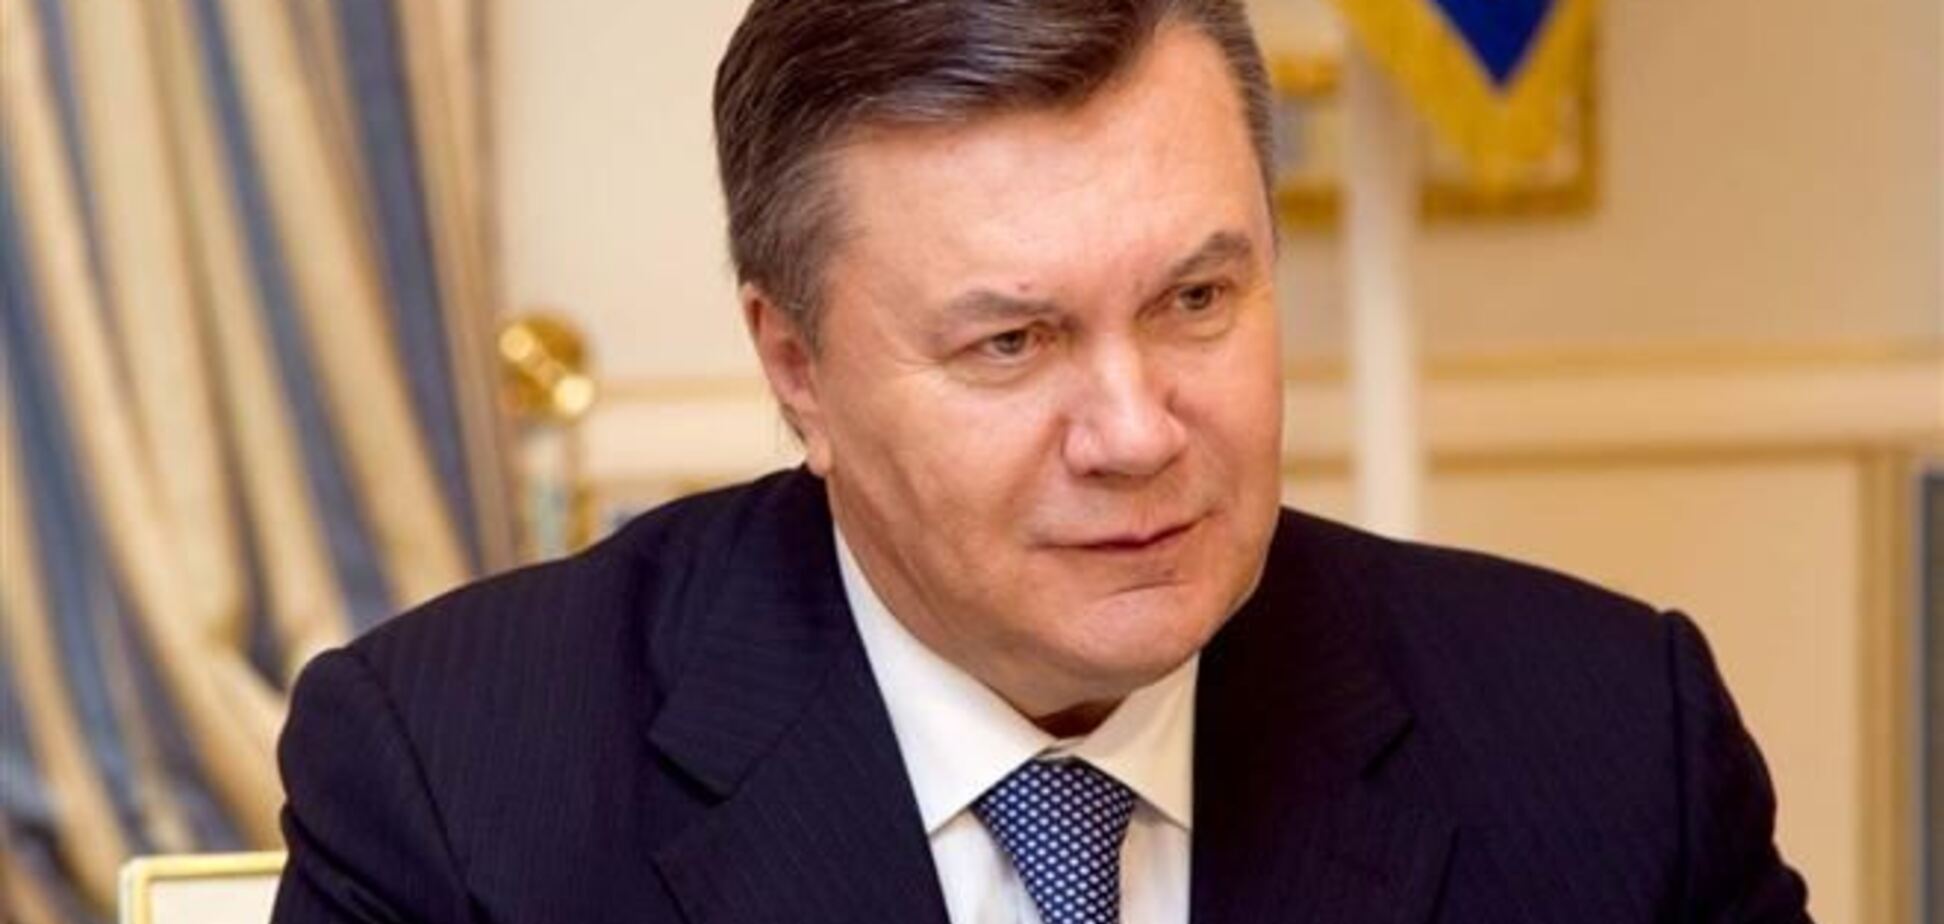 Інтернет підірвало нове відео, присвячене Януковичу: 'Вітя, чао!'